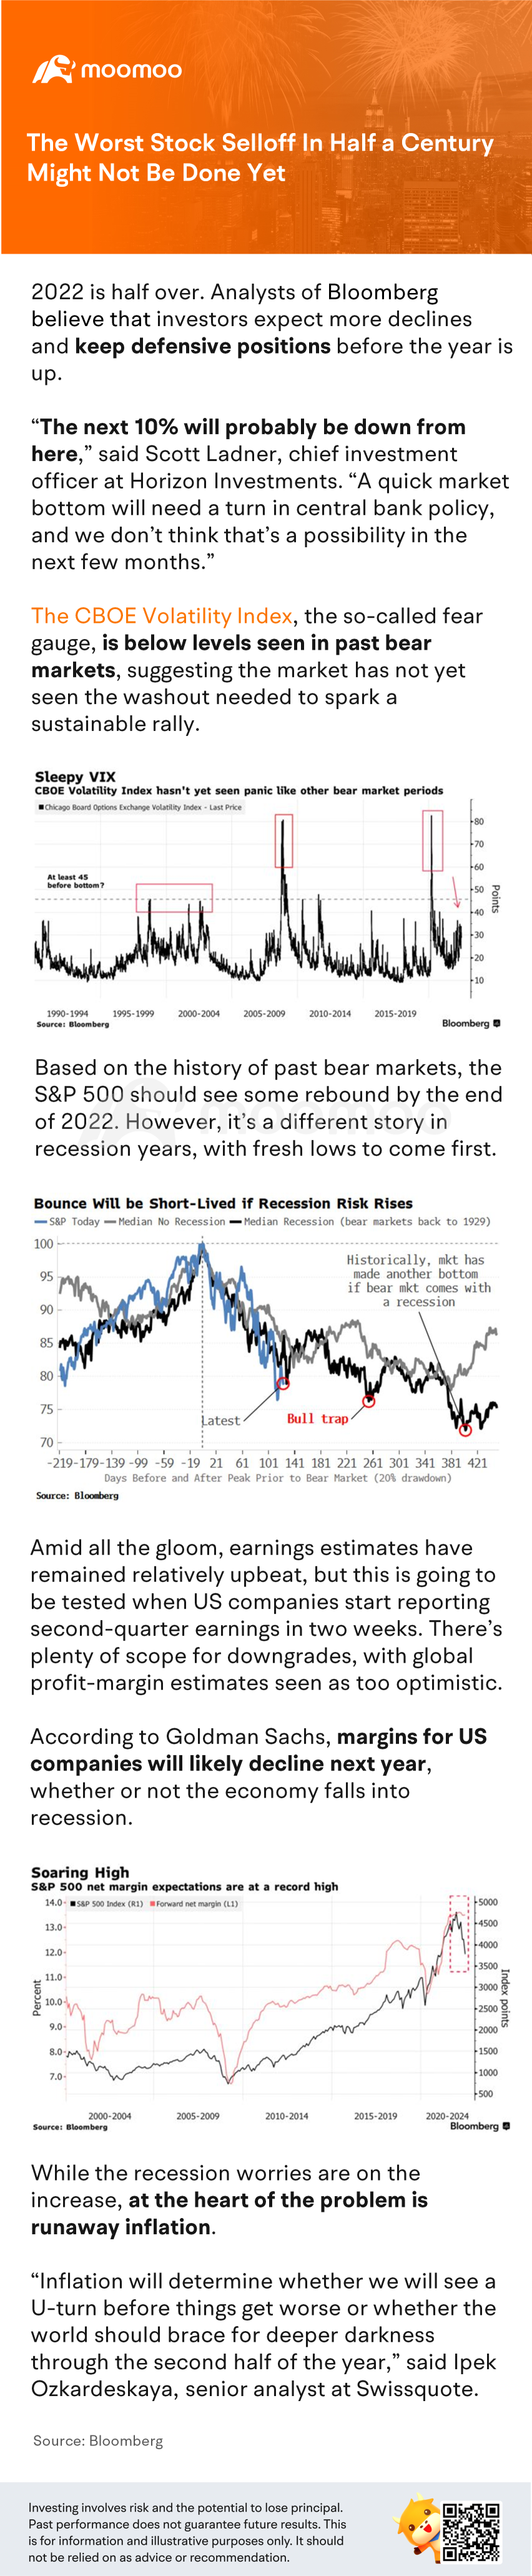 半個世紀以來最嚴重的股票拋售可能還沒有結束